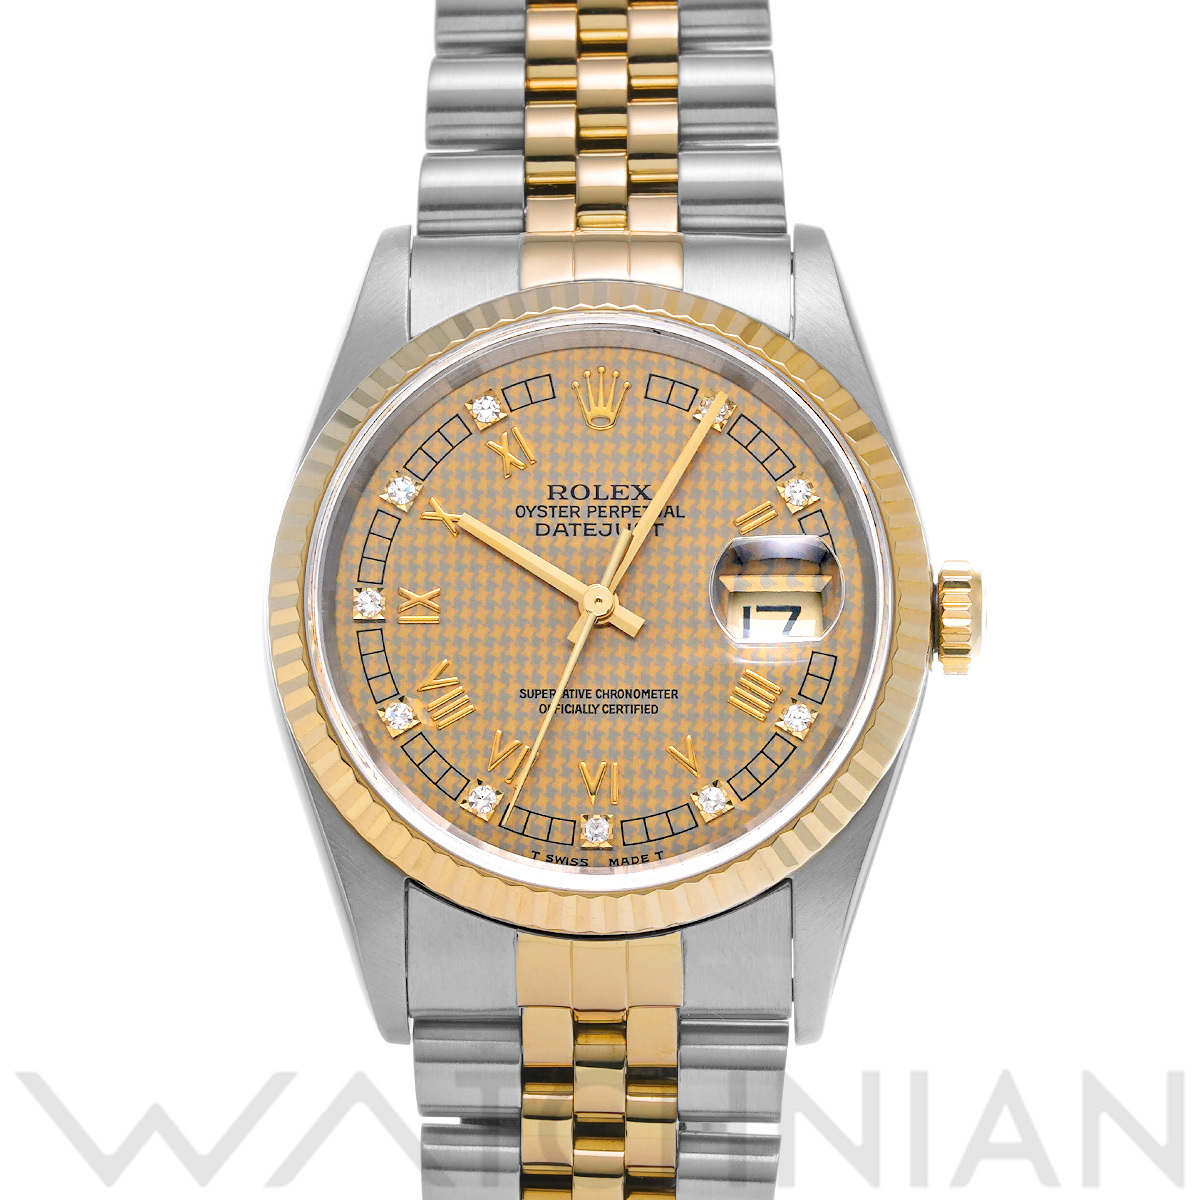 ロレックス デイトジャスト 16233G シャンパンハウンズトゥース/ダイヤモンド メンズ 時計 【中古】【wristwatch】